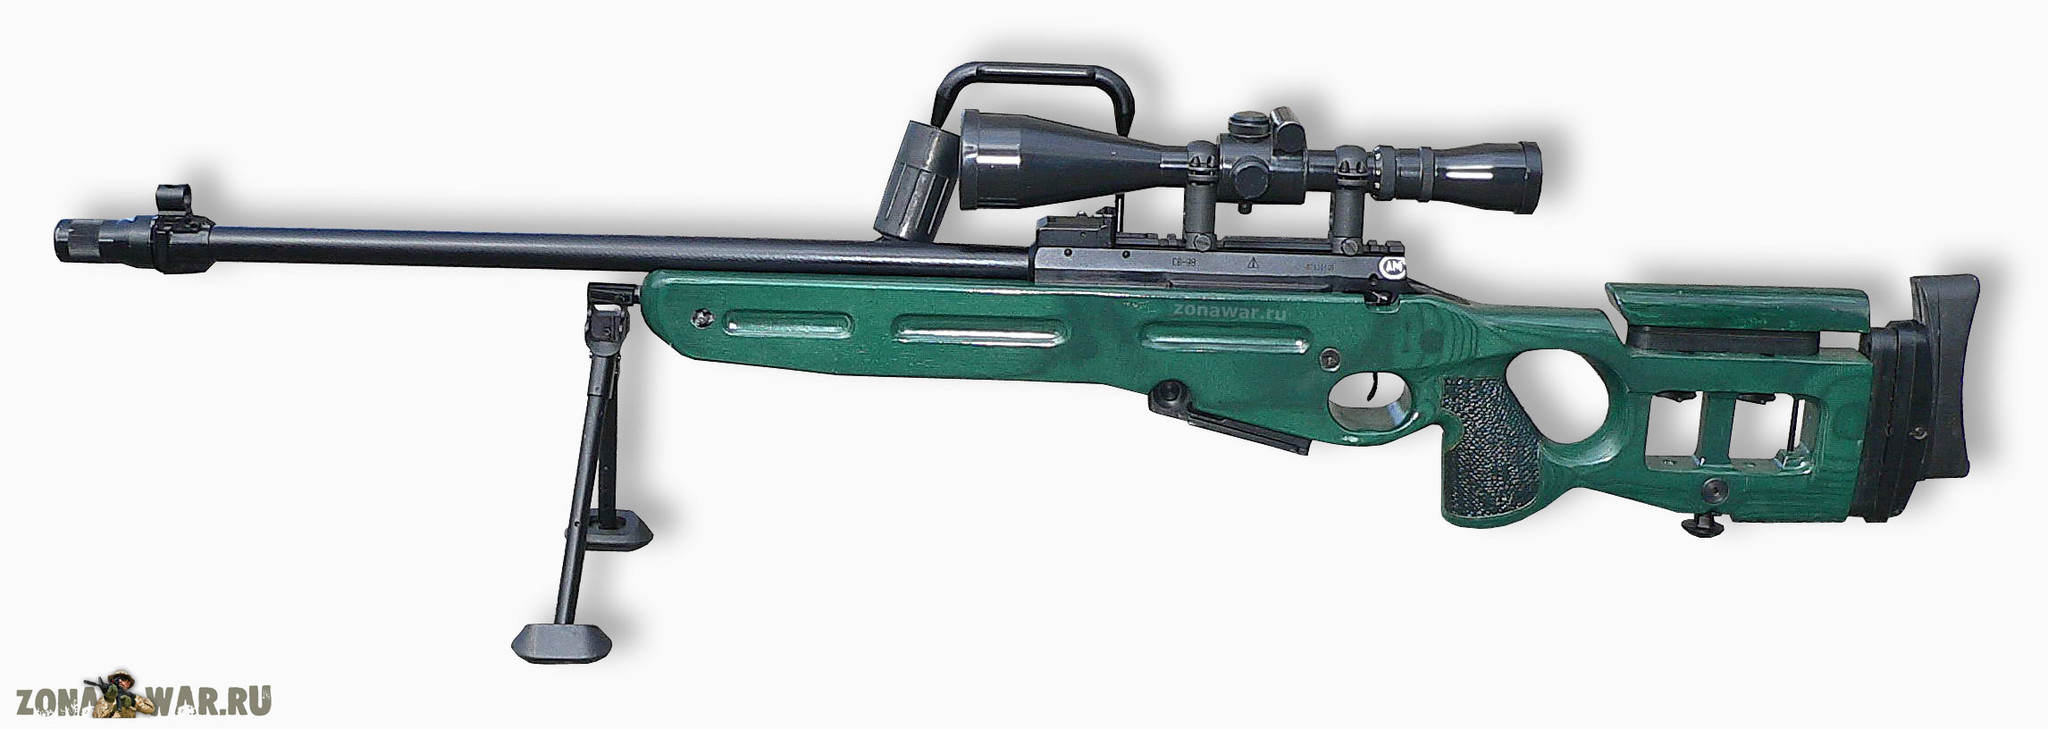 Снайперская винтовка СВ-98 на сошке 